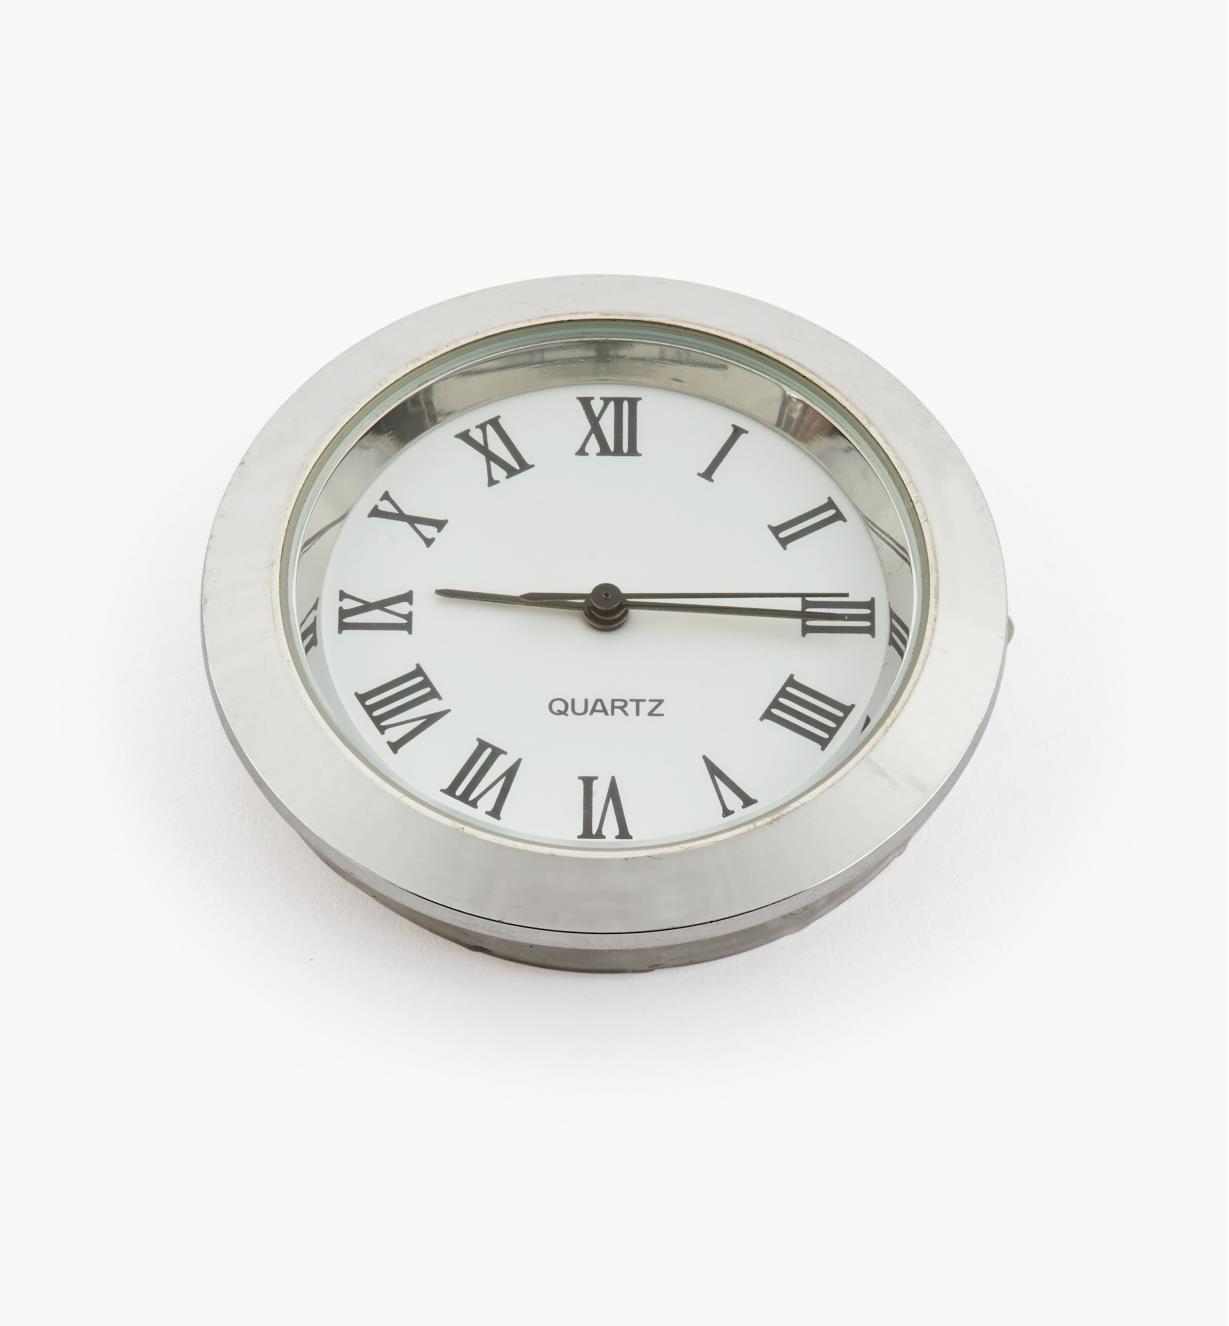 44K0153 - Horloge, cadran blanc à chiffres romains, lunette argent